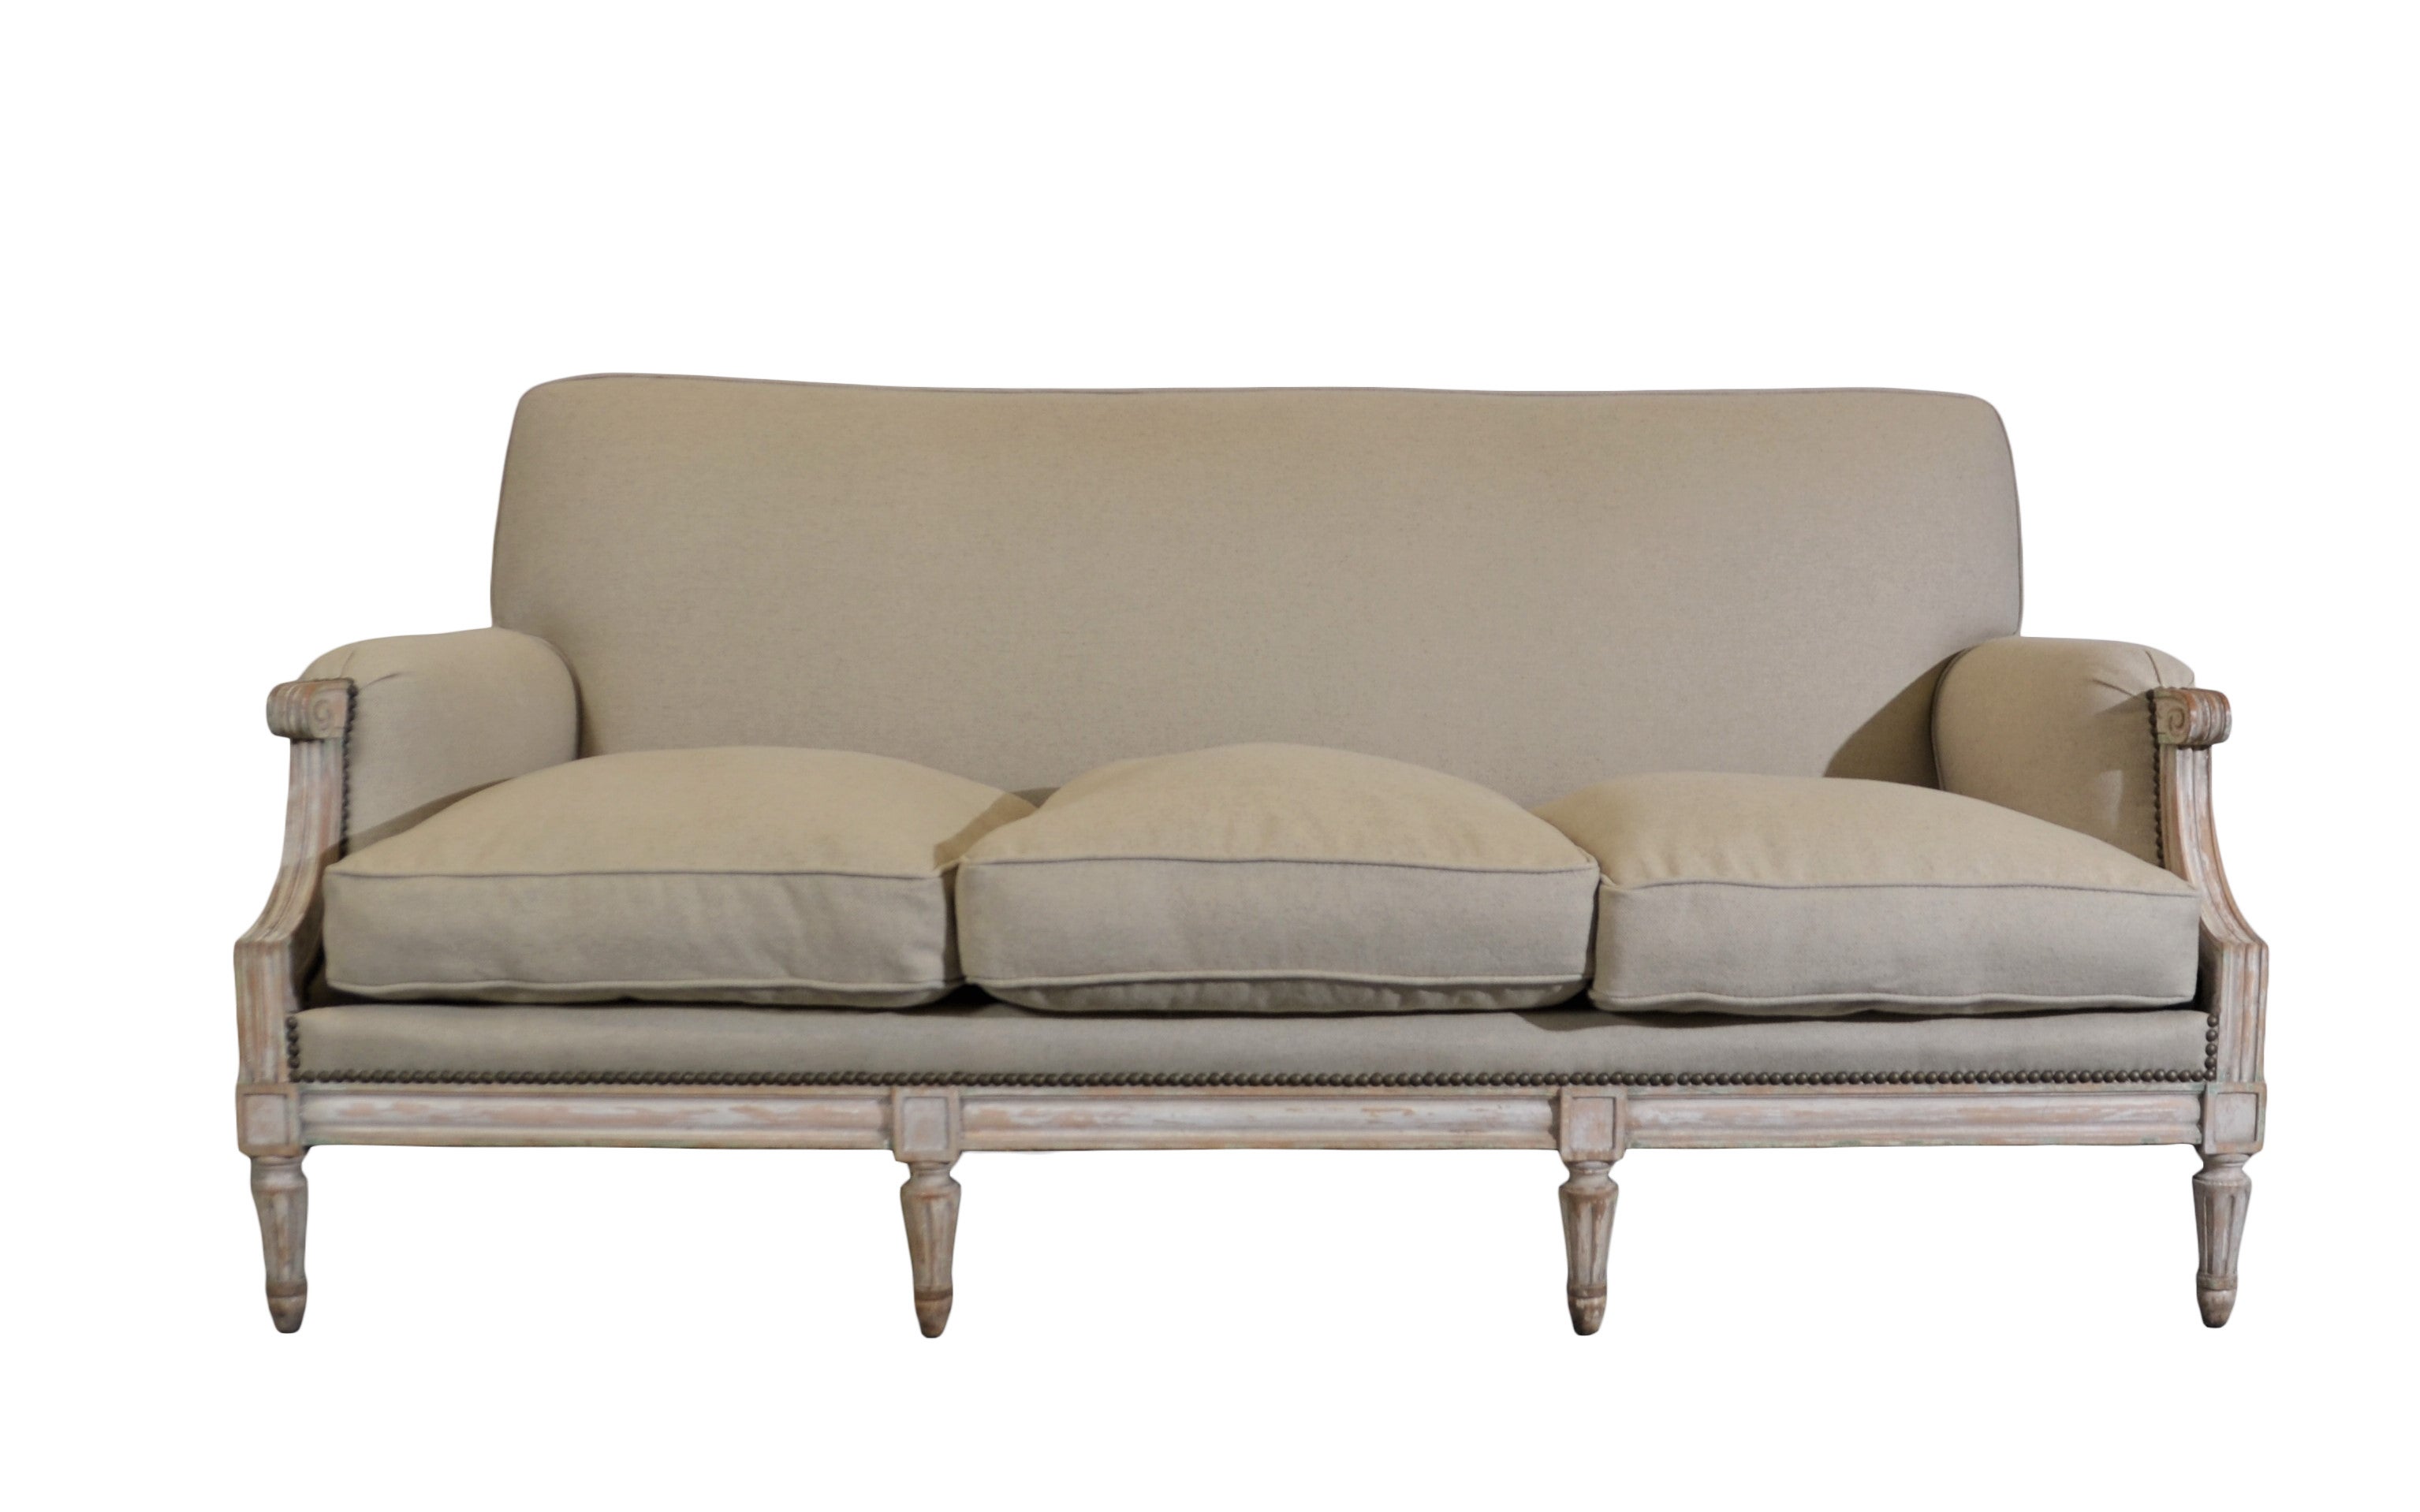 Französisches Sofa im Louis-Xvi-Stil. Der Holzrahmen ist naturbelassen und weiß lackiert. Neu gepolstert mit Nagelköpfen. 